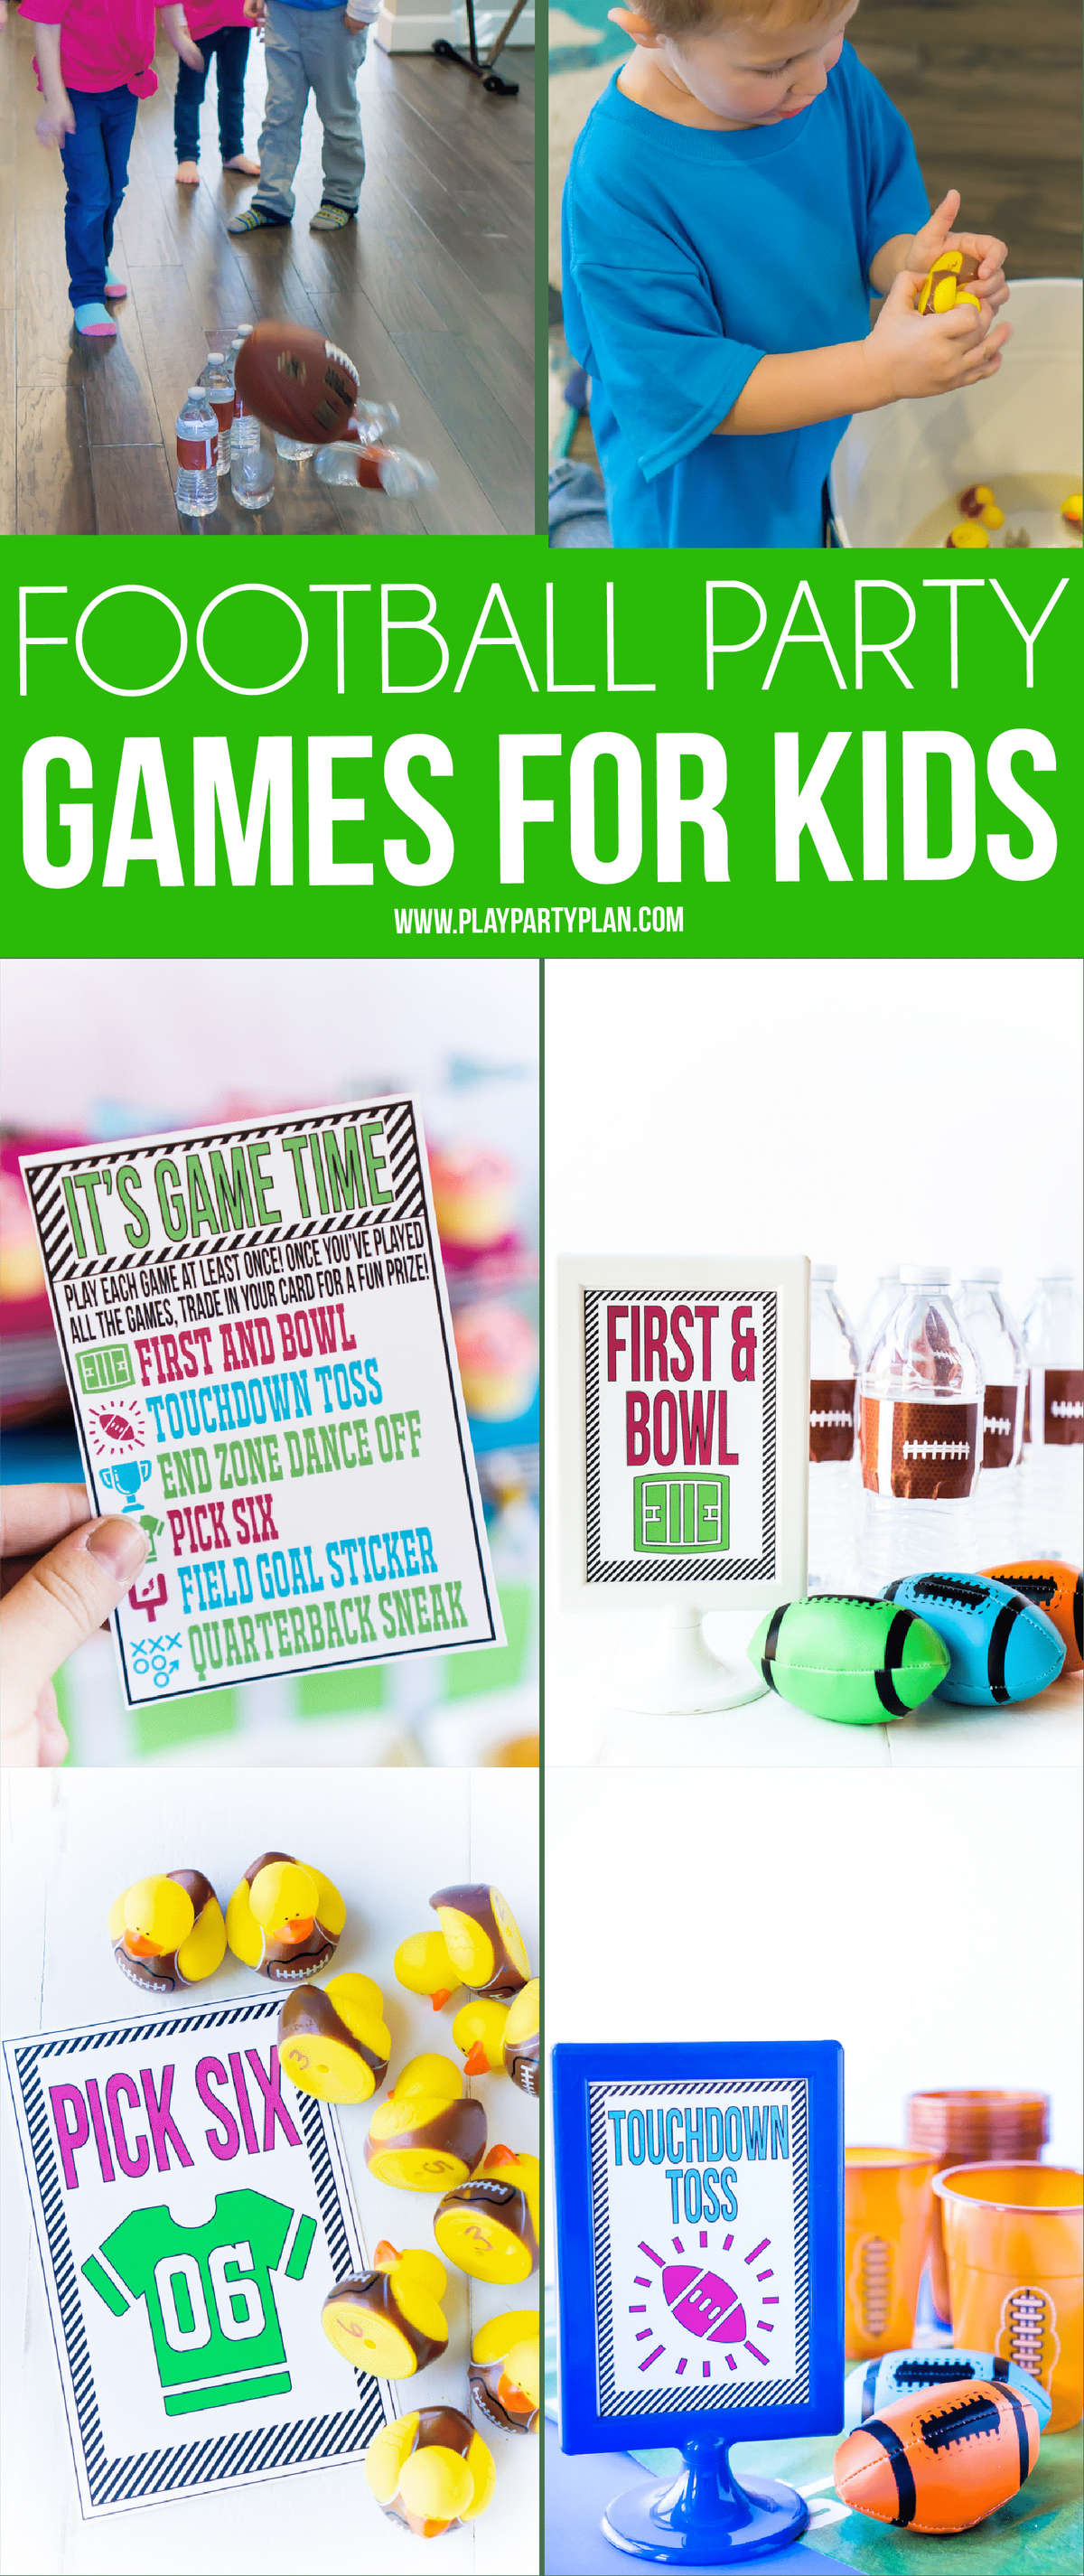 Направи си сам футболни парти игри за деца с безплатни карти с инструкции за печат! Определено шест от най-добрите неща за правене на футболно парти, независимо дали става дума за Super Bowl или детско парти за футболен рожден ден!